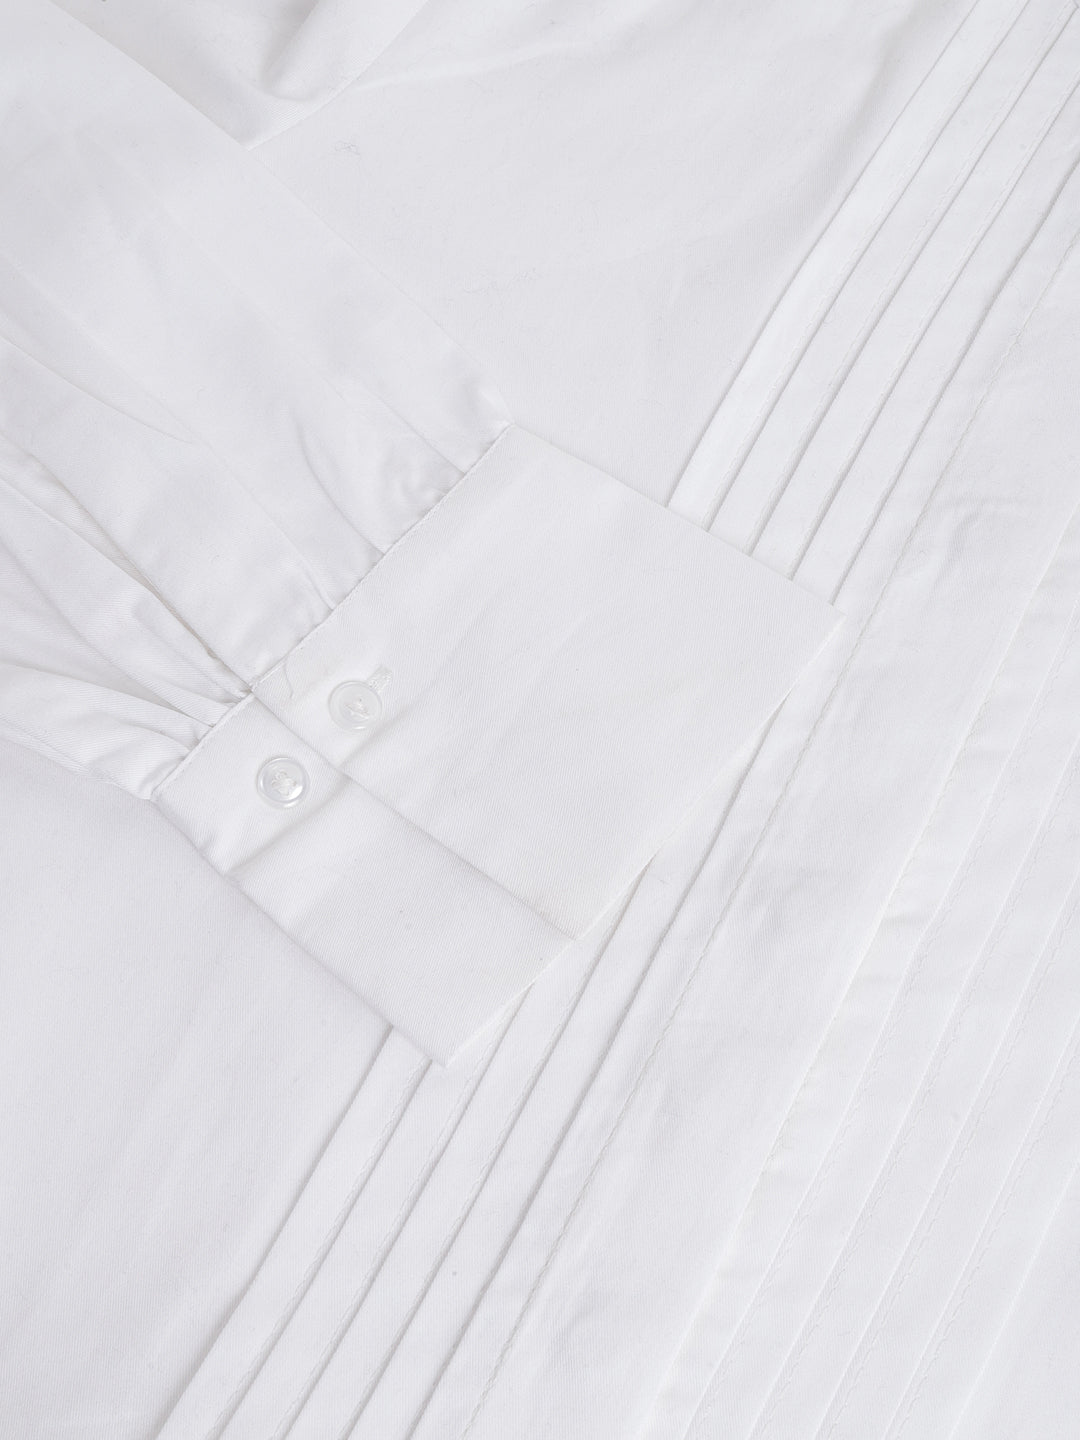 White Shirt Dresses - Buy White Shirt Dresses online in India